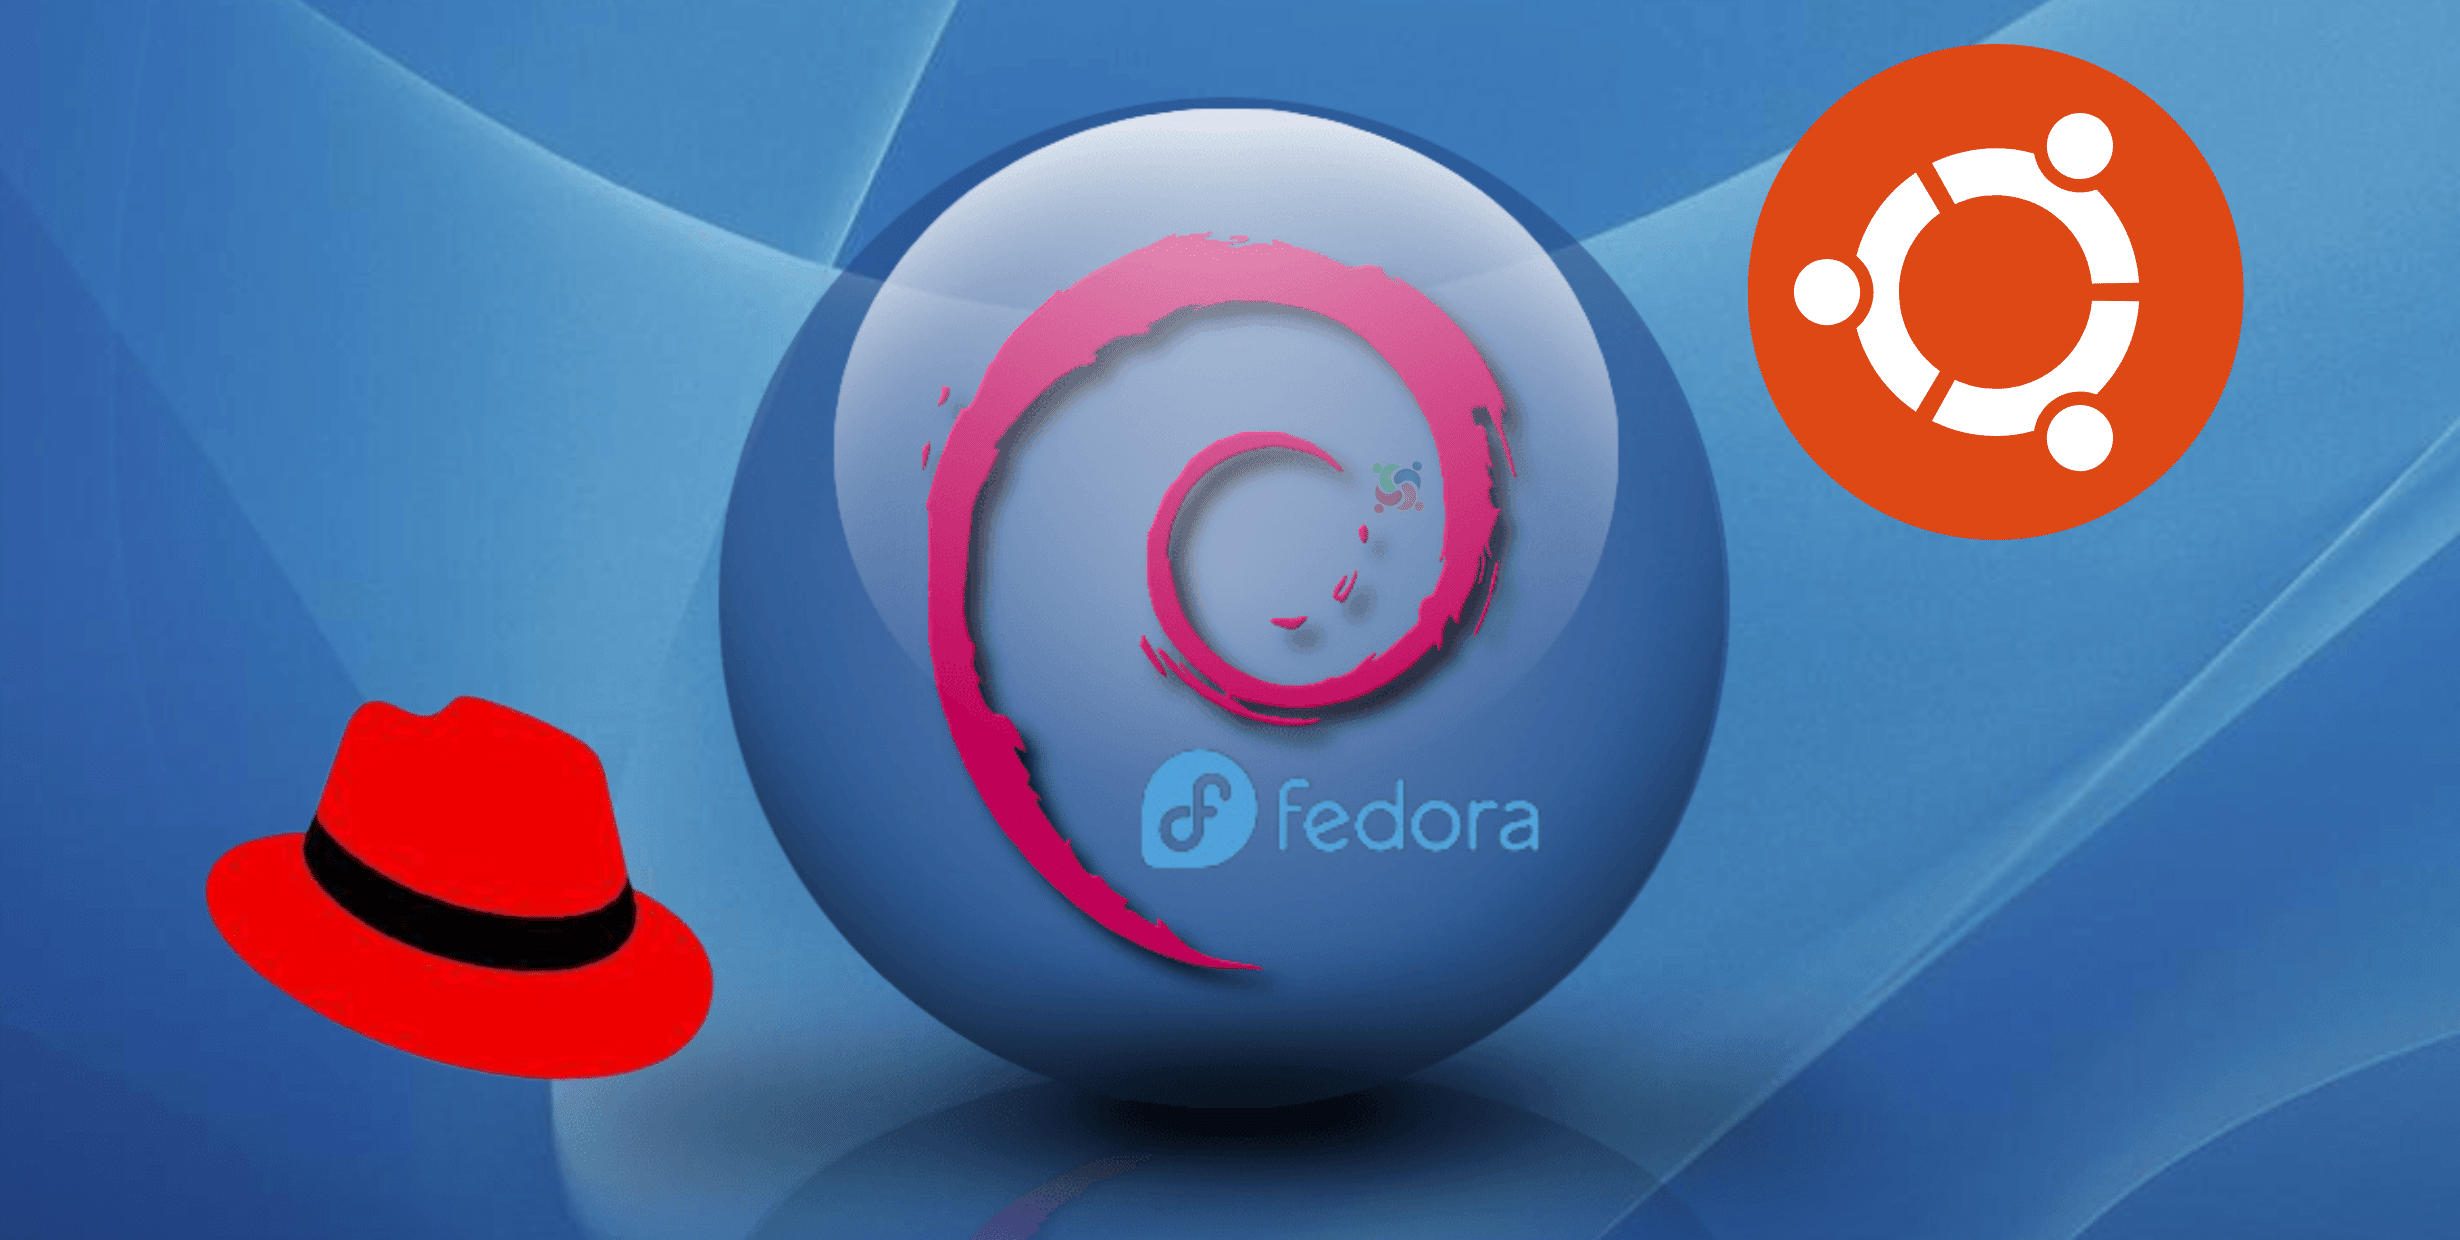 Fedora, Debian, Ubuntu sofrem com falha no kernel Linux que dá acesso root a invasores